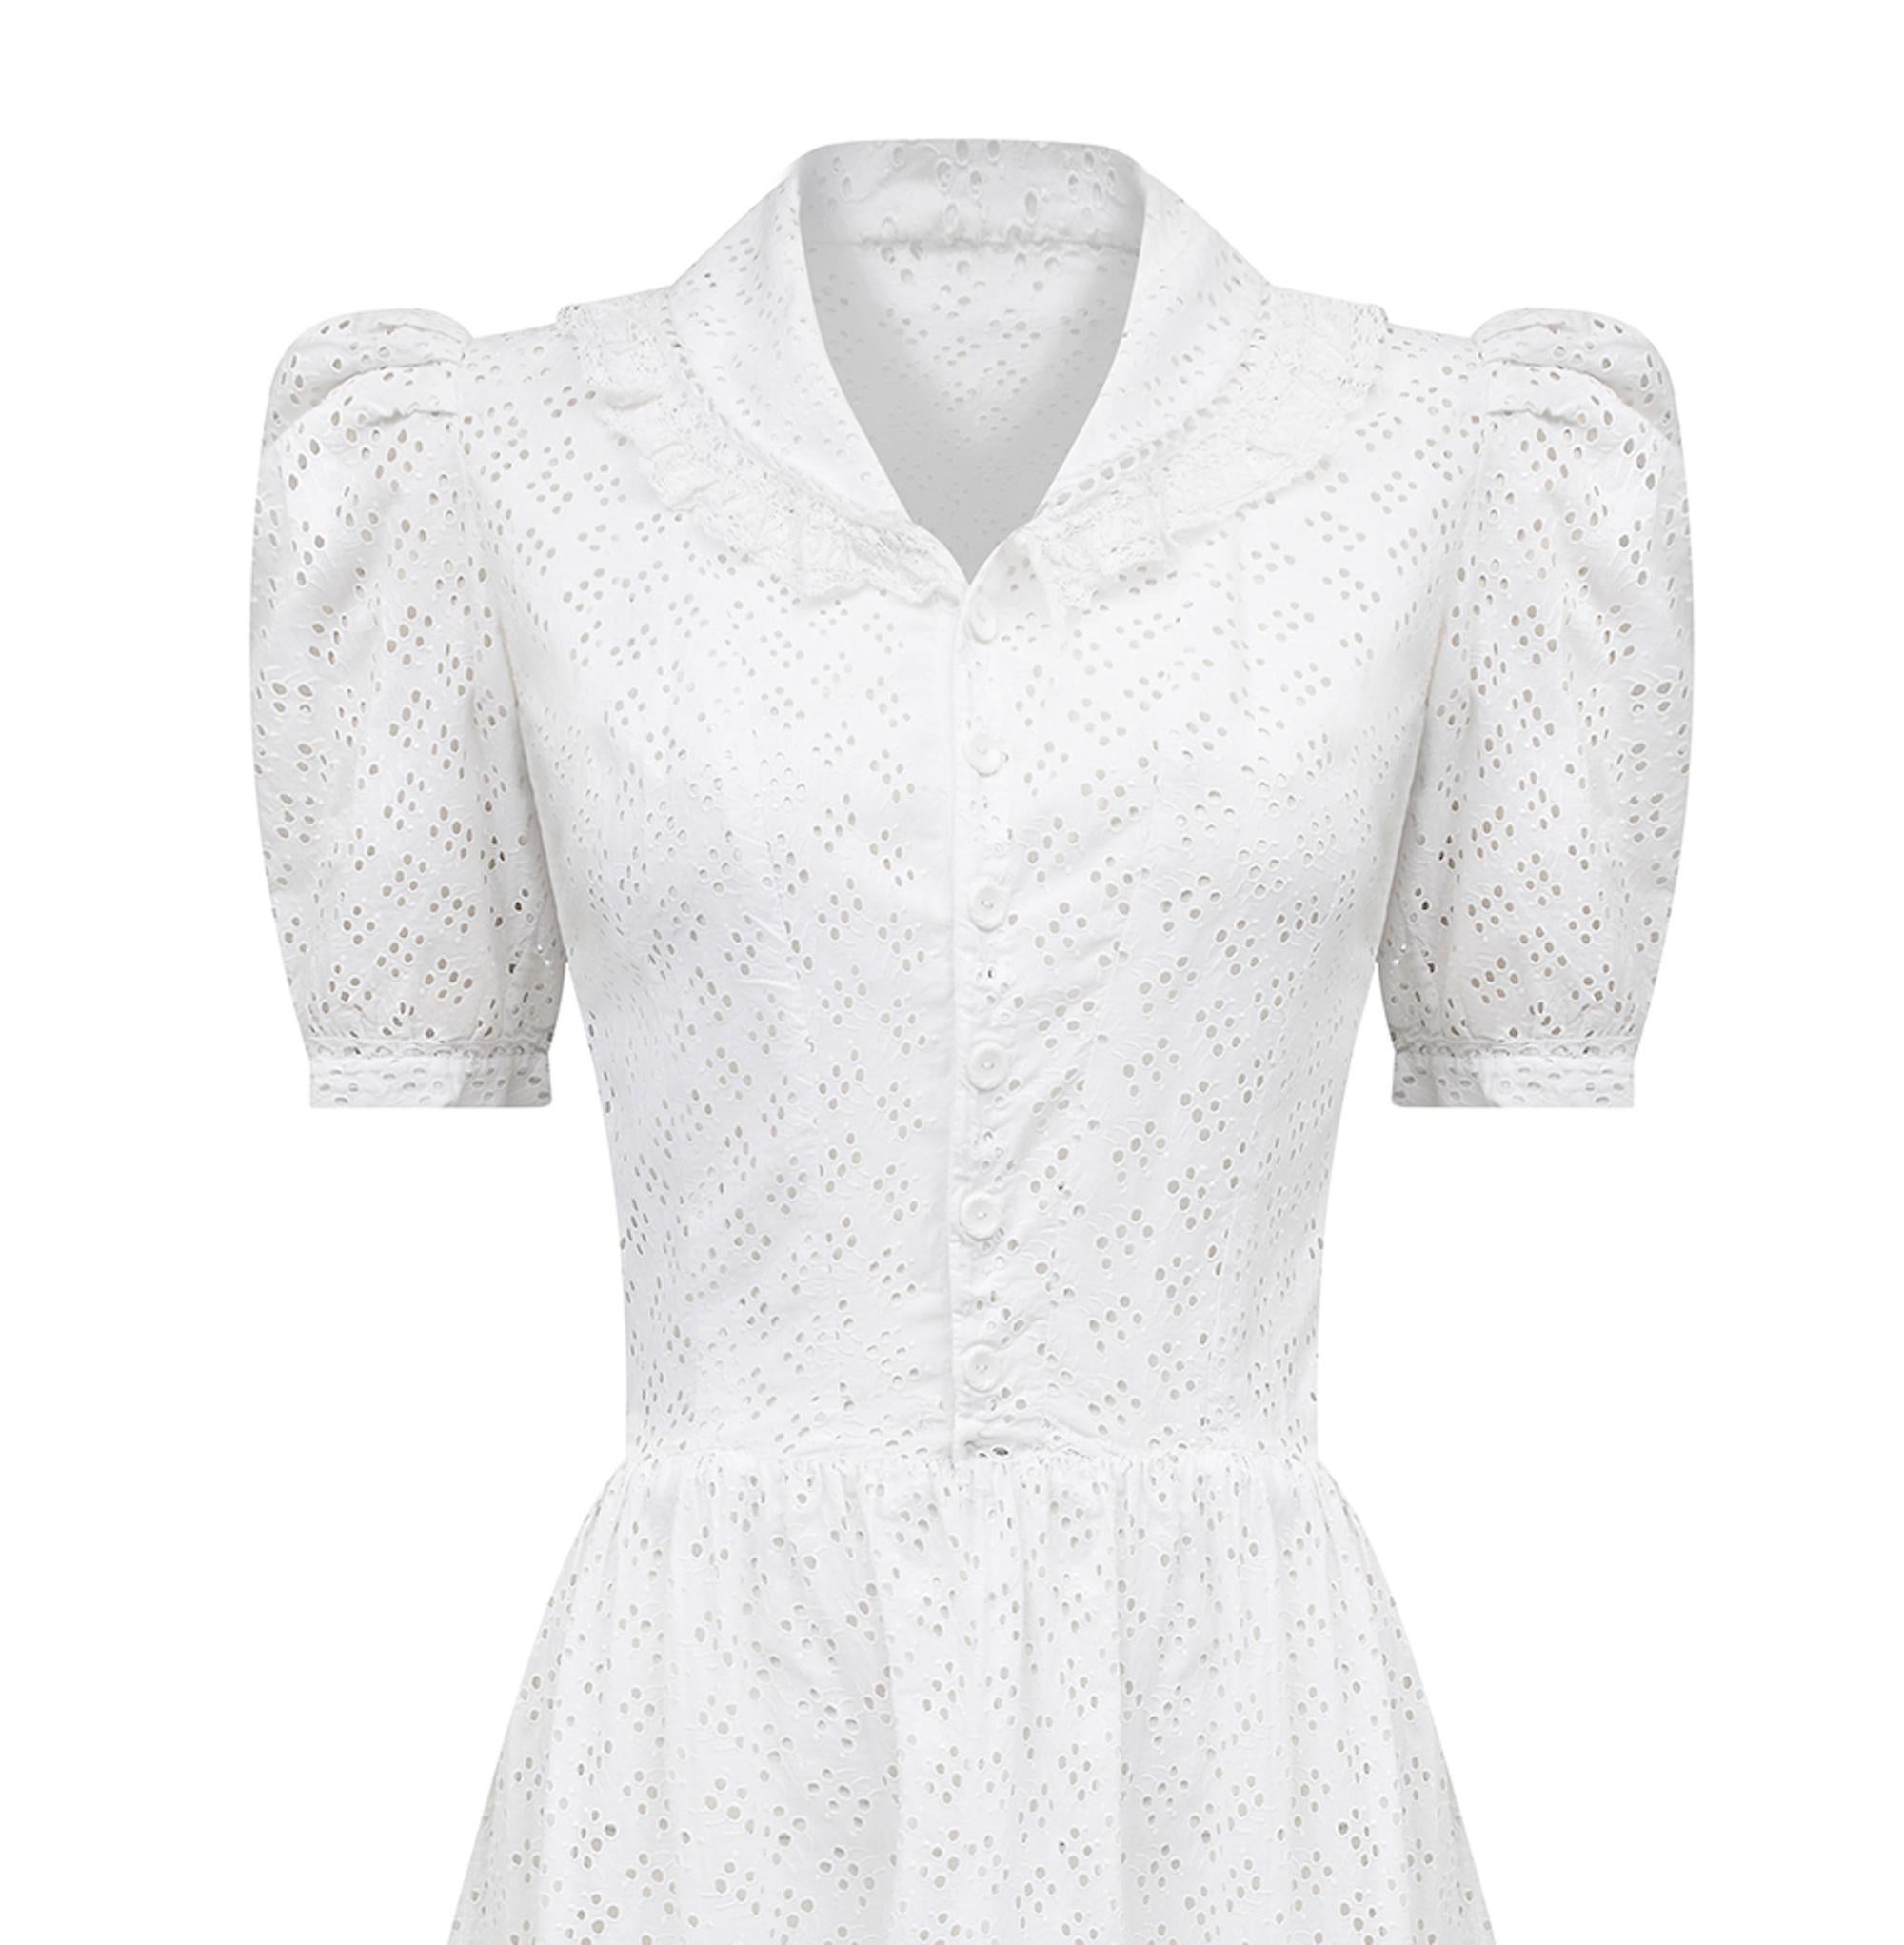 white 1940s dress